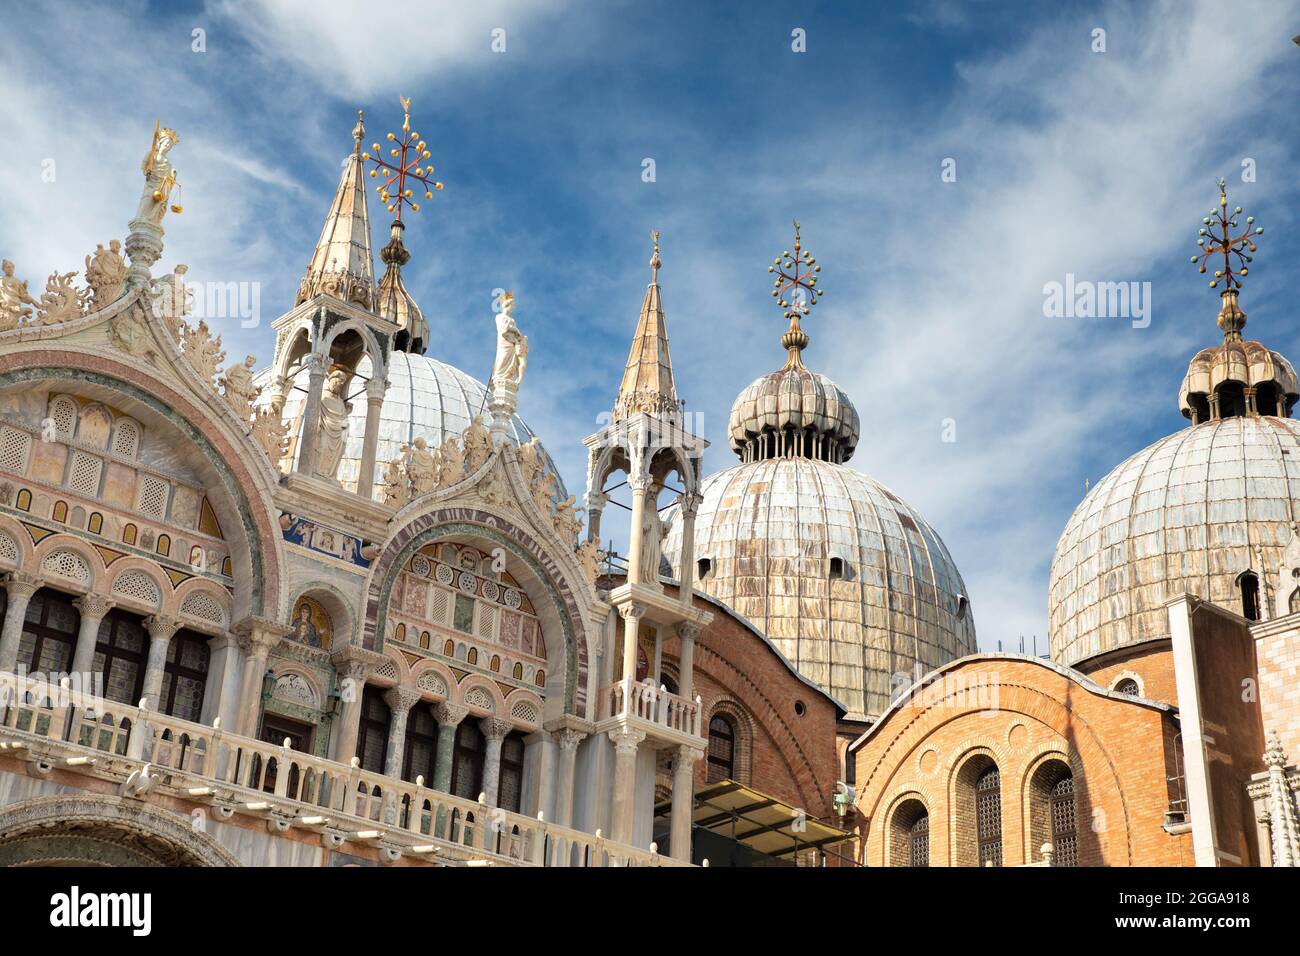 Detalle artístico de las torres y cúpulas de la Basílica de San Marcos en Venecia - ciudades italianas para visitar y puntos de interés turístico y cultural Foto de stock